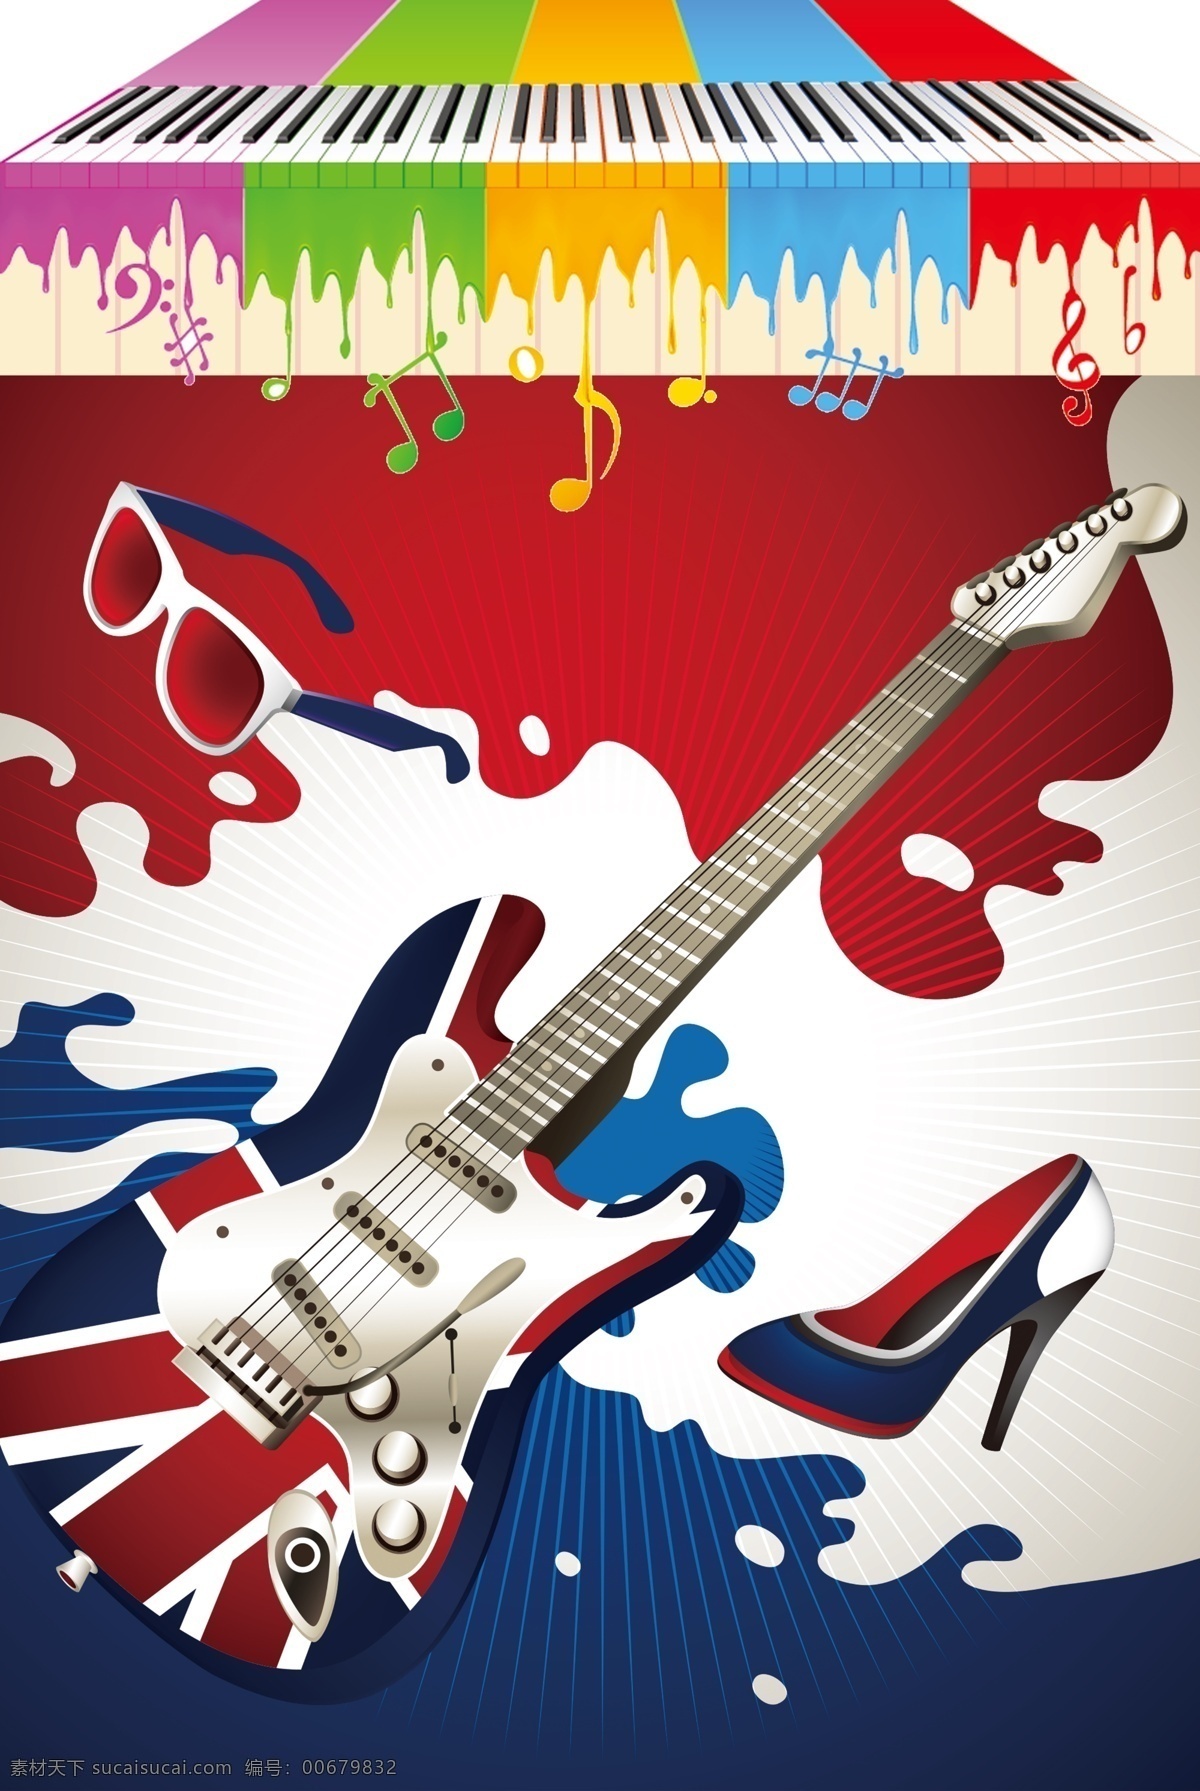 音乐教室挂图 学校 音乐 校园 宣传 海报 挂图 吉他 钢琴 白色